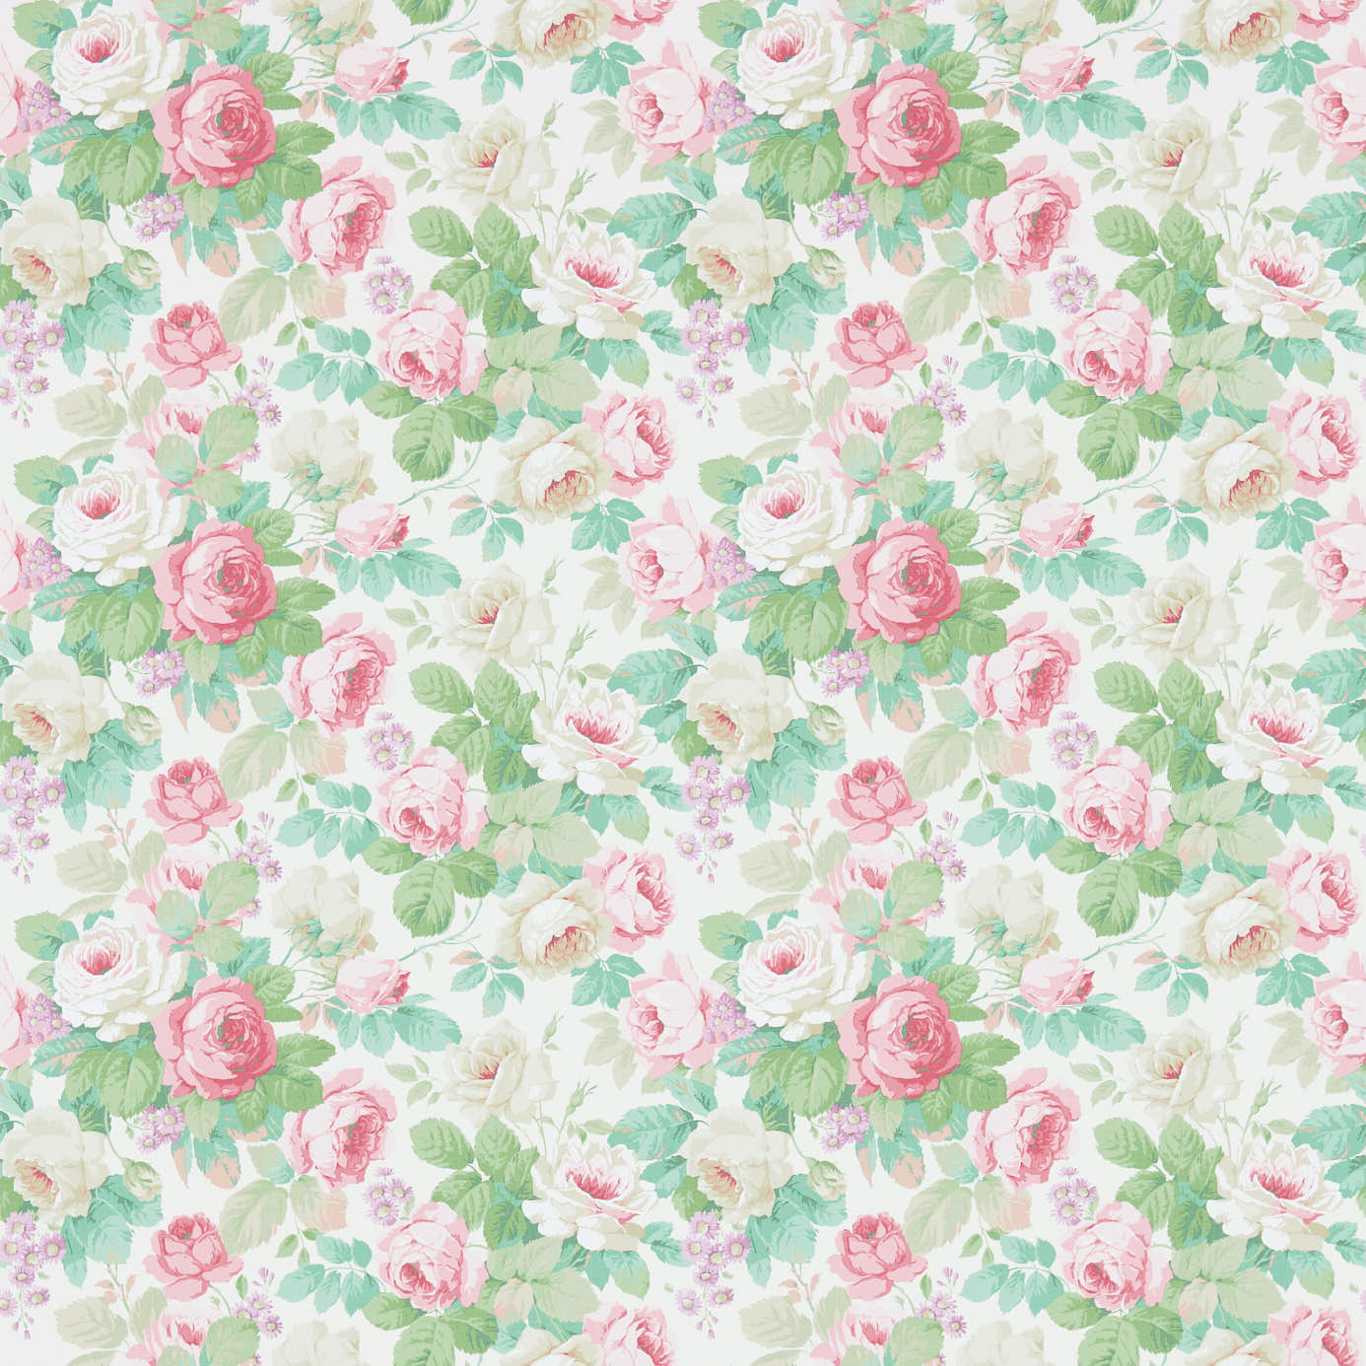 Chelsea Pink/Celadon Wallpaper DVIN214604 by Sanderson